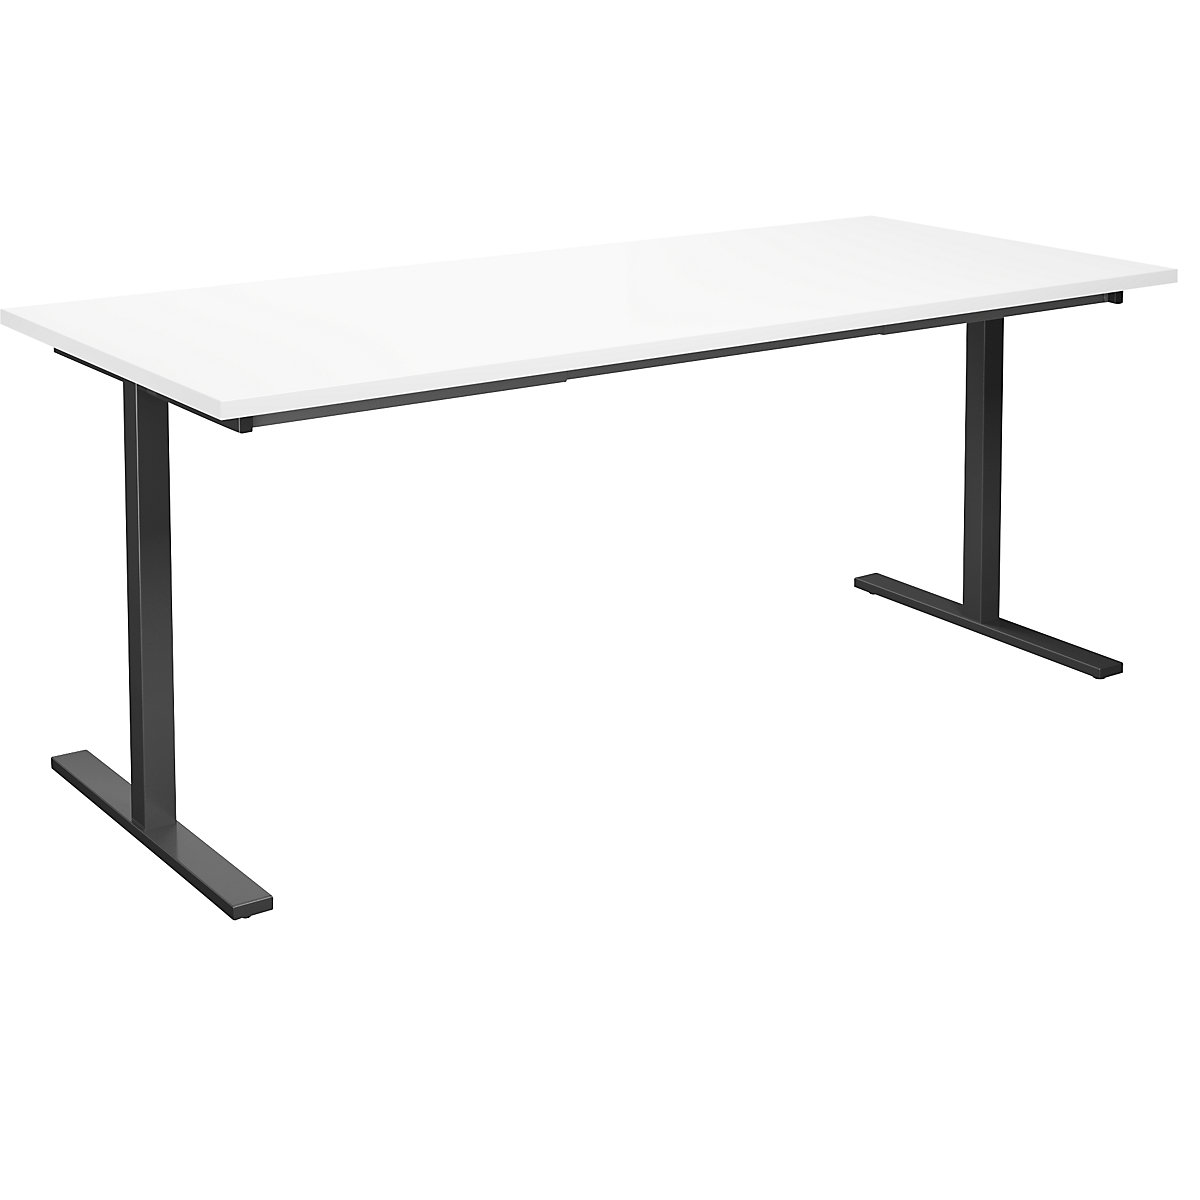 DUO-T multi-purpose desk, straight tabletop, WxD 1800 x 800 mm, white, black-16